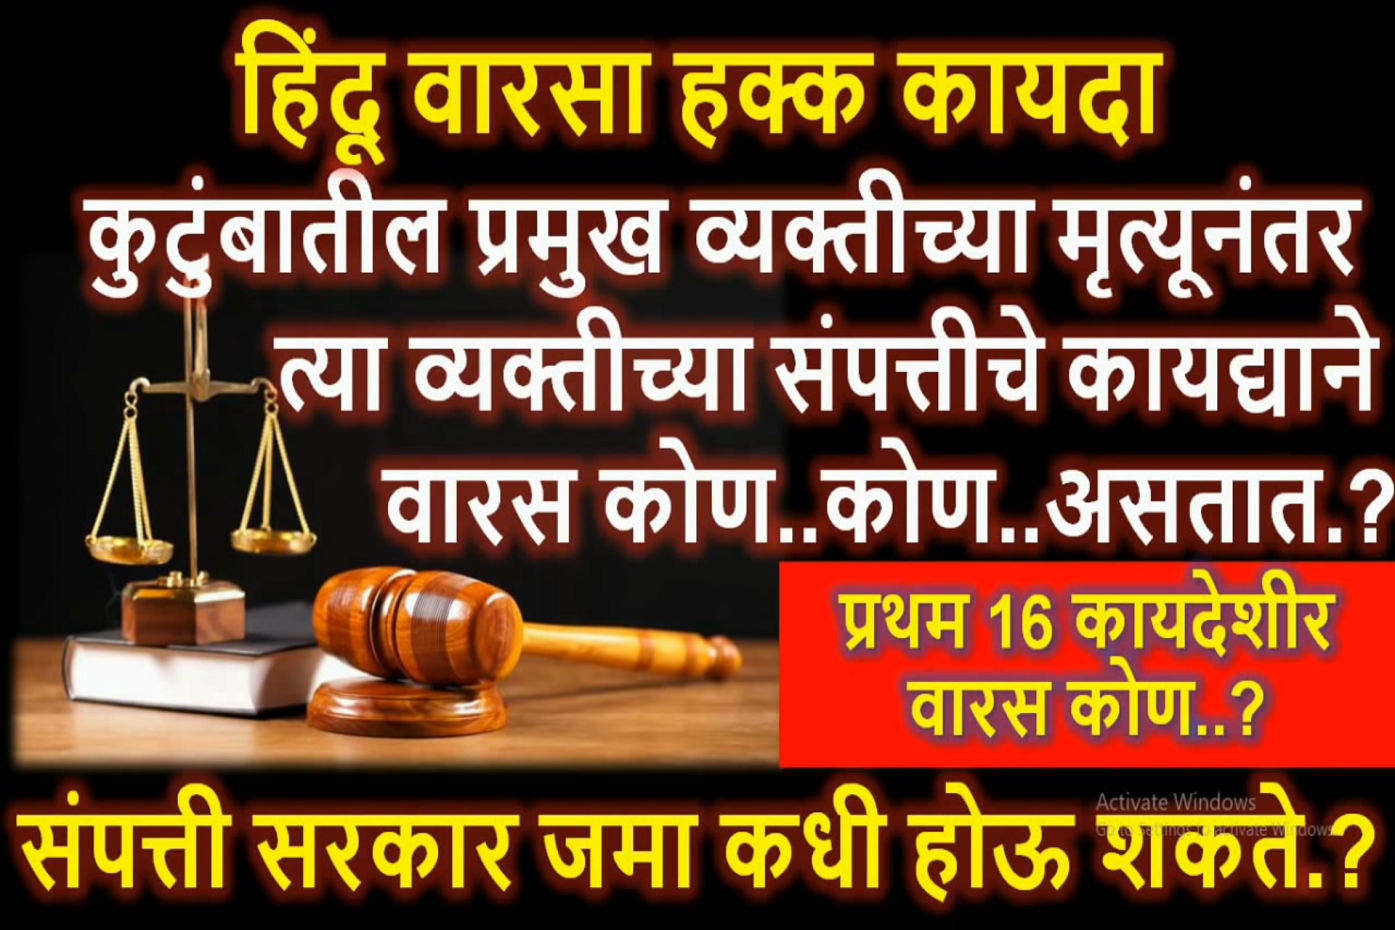 हिंदू वारसाहक्क कायद्याने 16 खरे कायदेशीर वारस ? कायदेशीर वारस कोण कोण असतात ? वारस नोंद l वारसा हक्कl